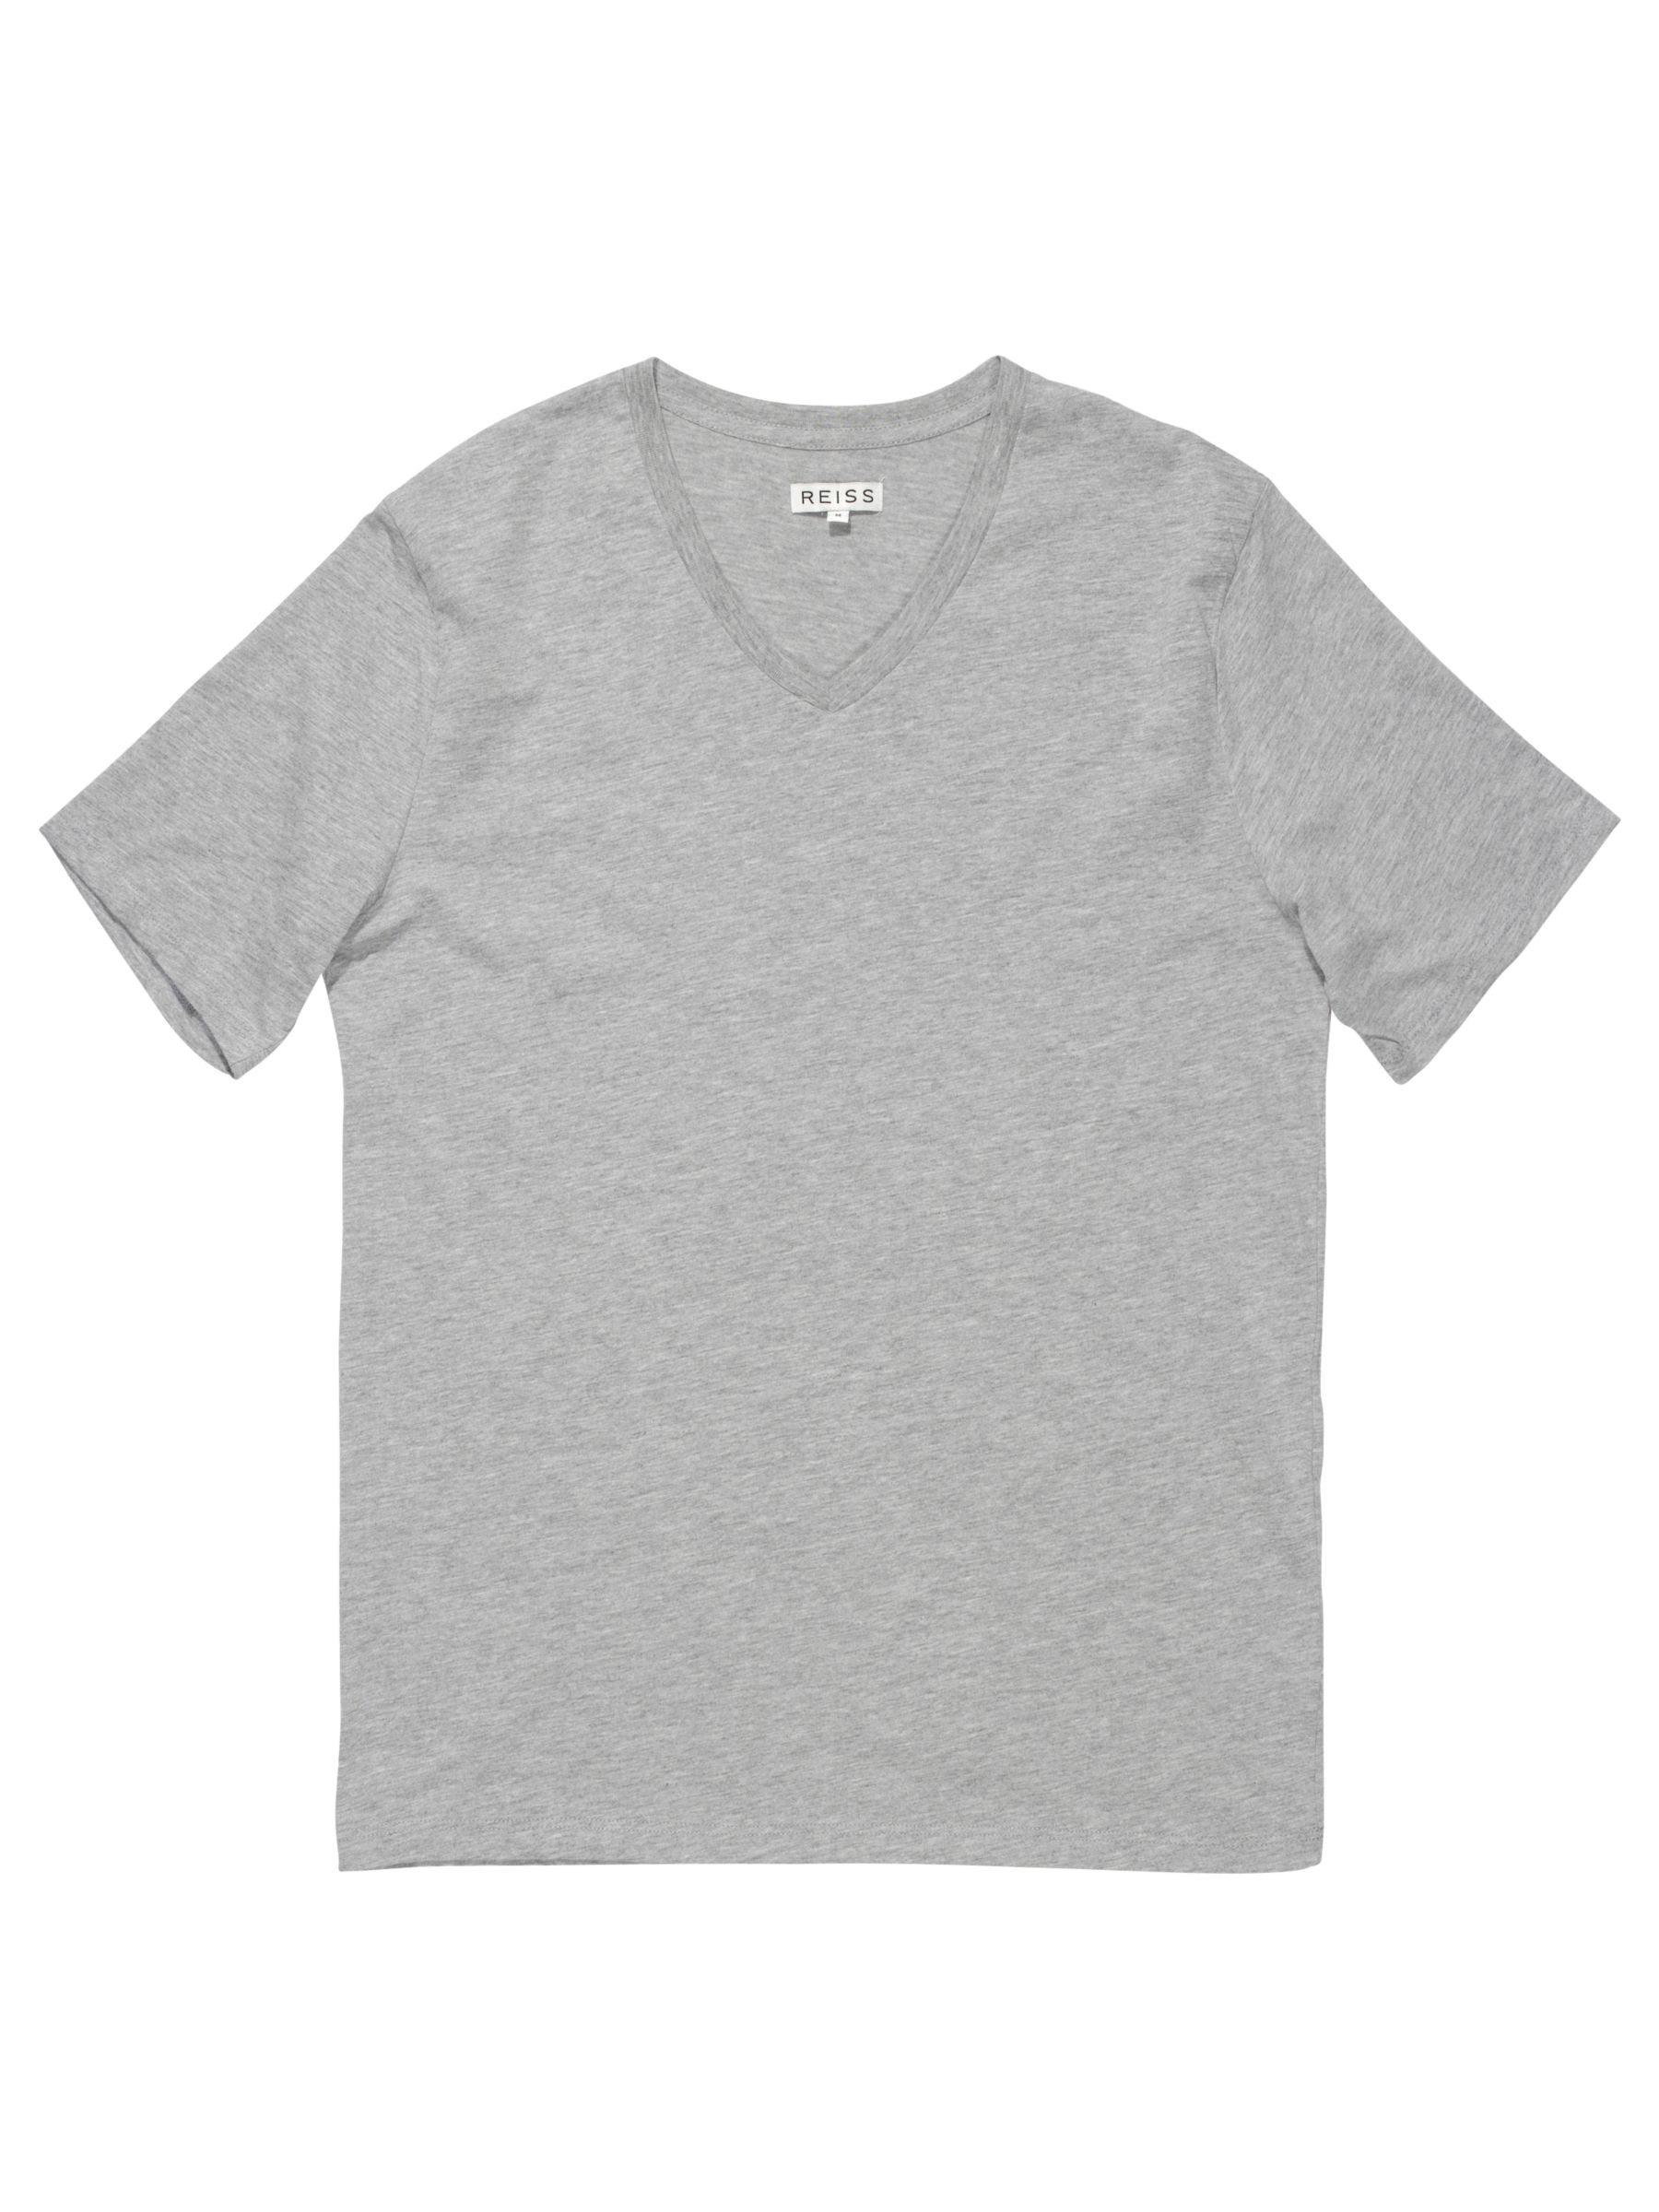 Dayton Basic V Neck T-Shirt, Light grey